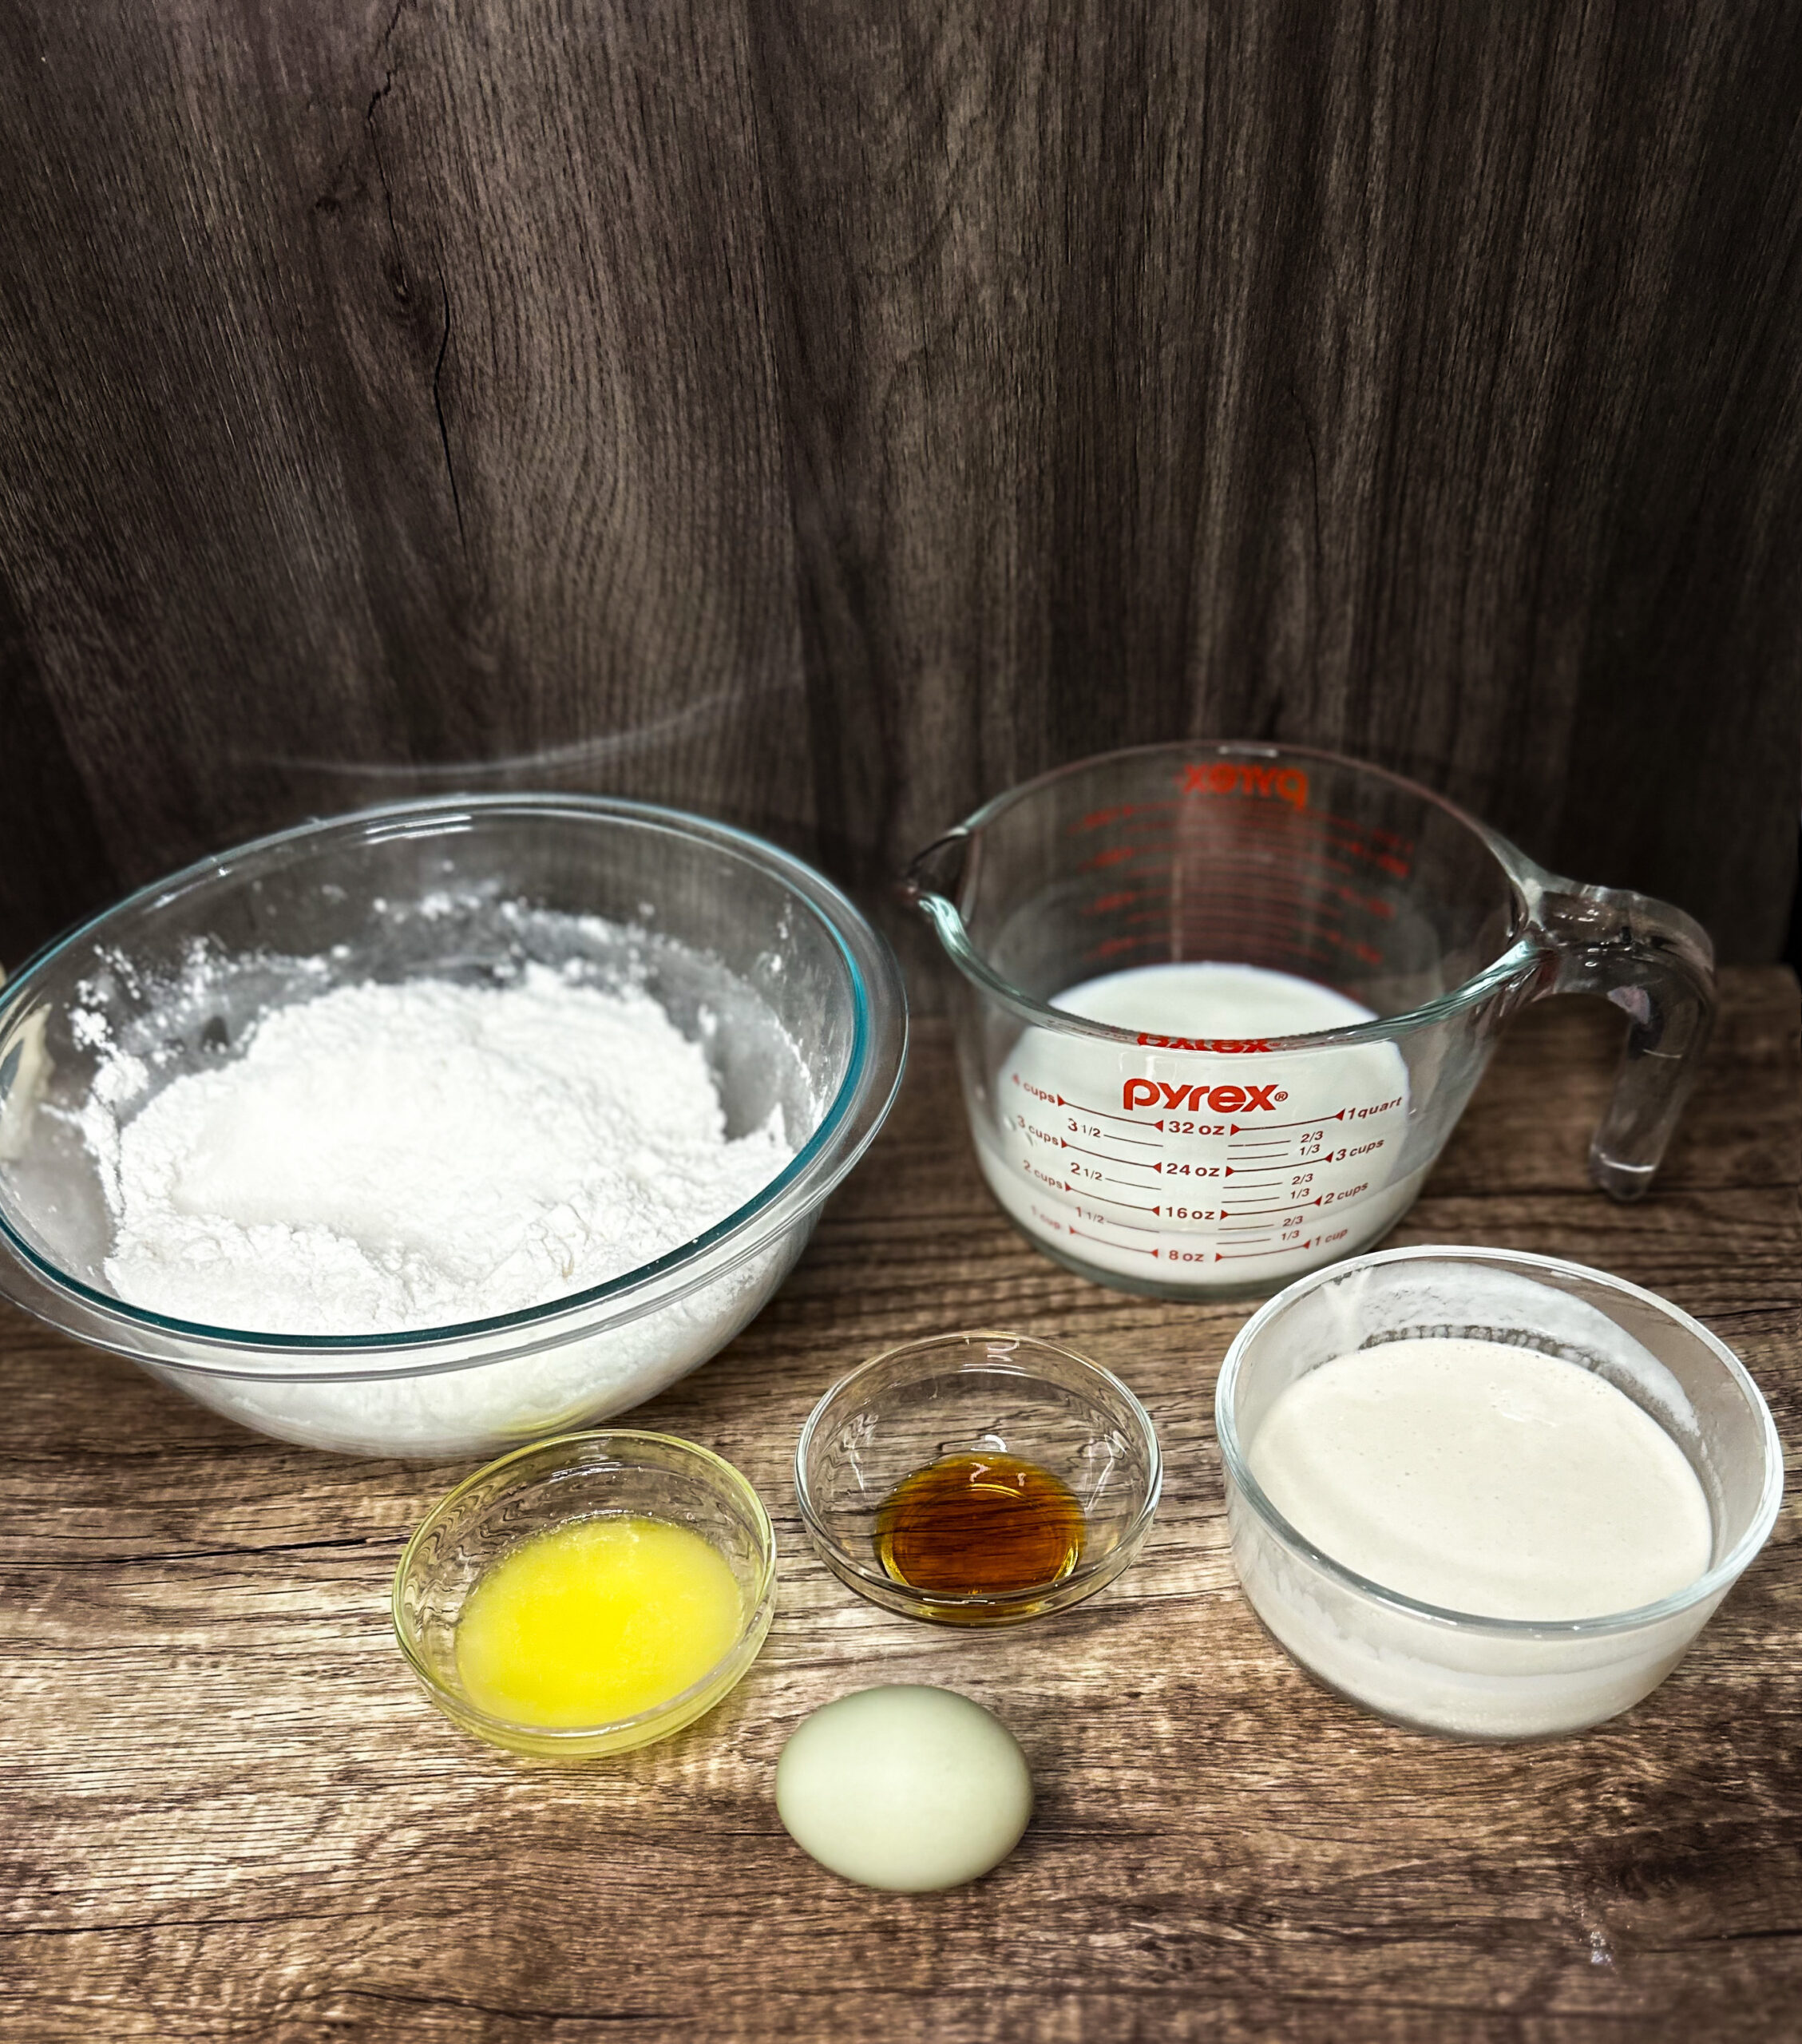 sourdough pancake ingredients on a kitchen counter